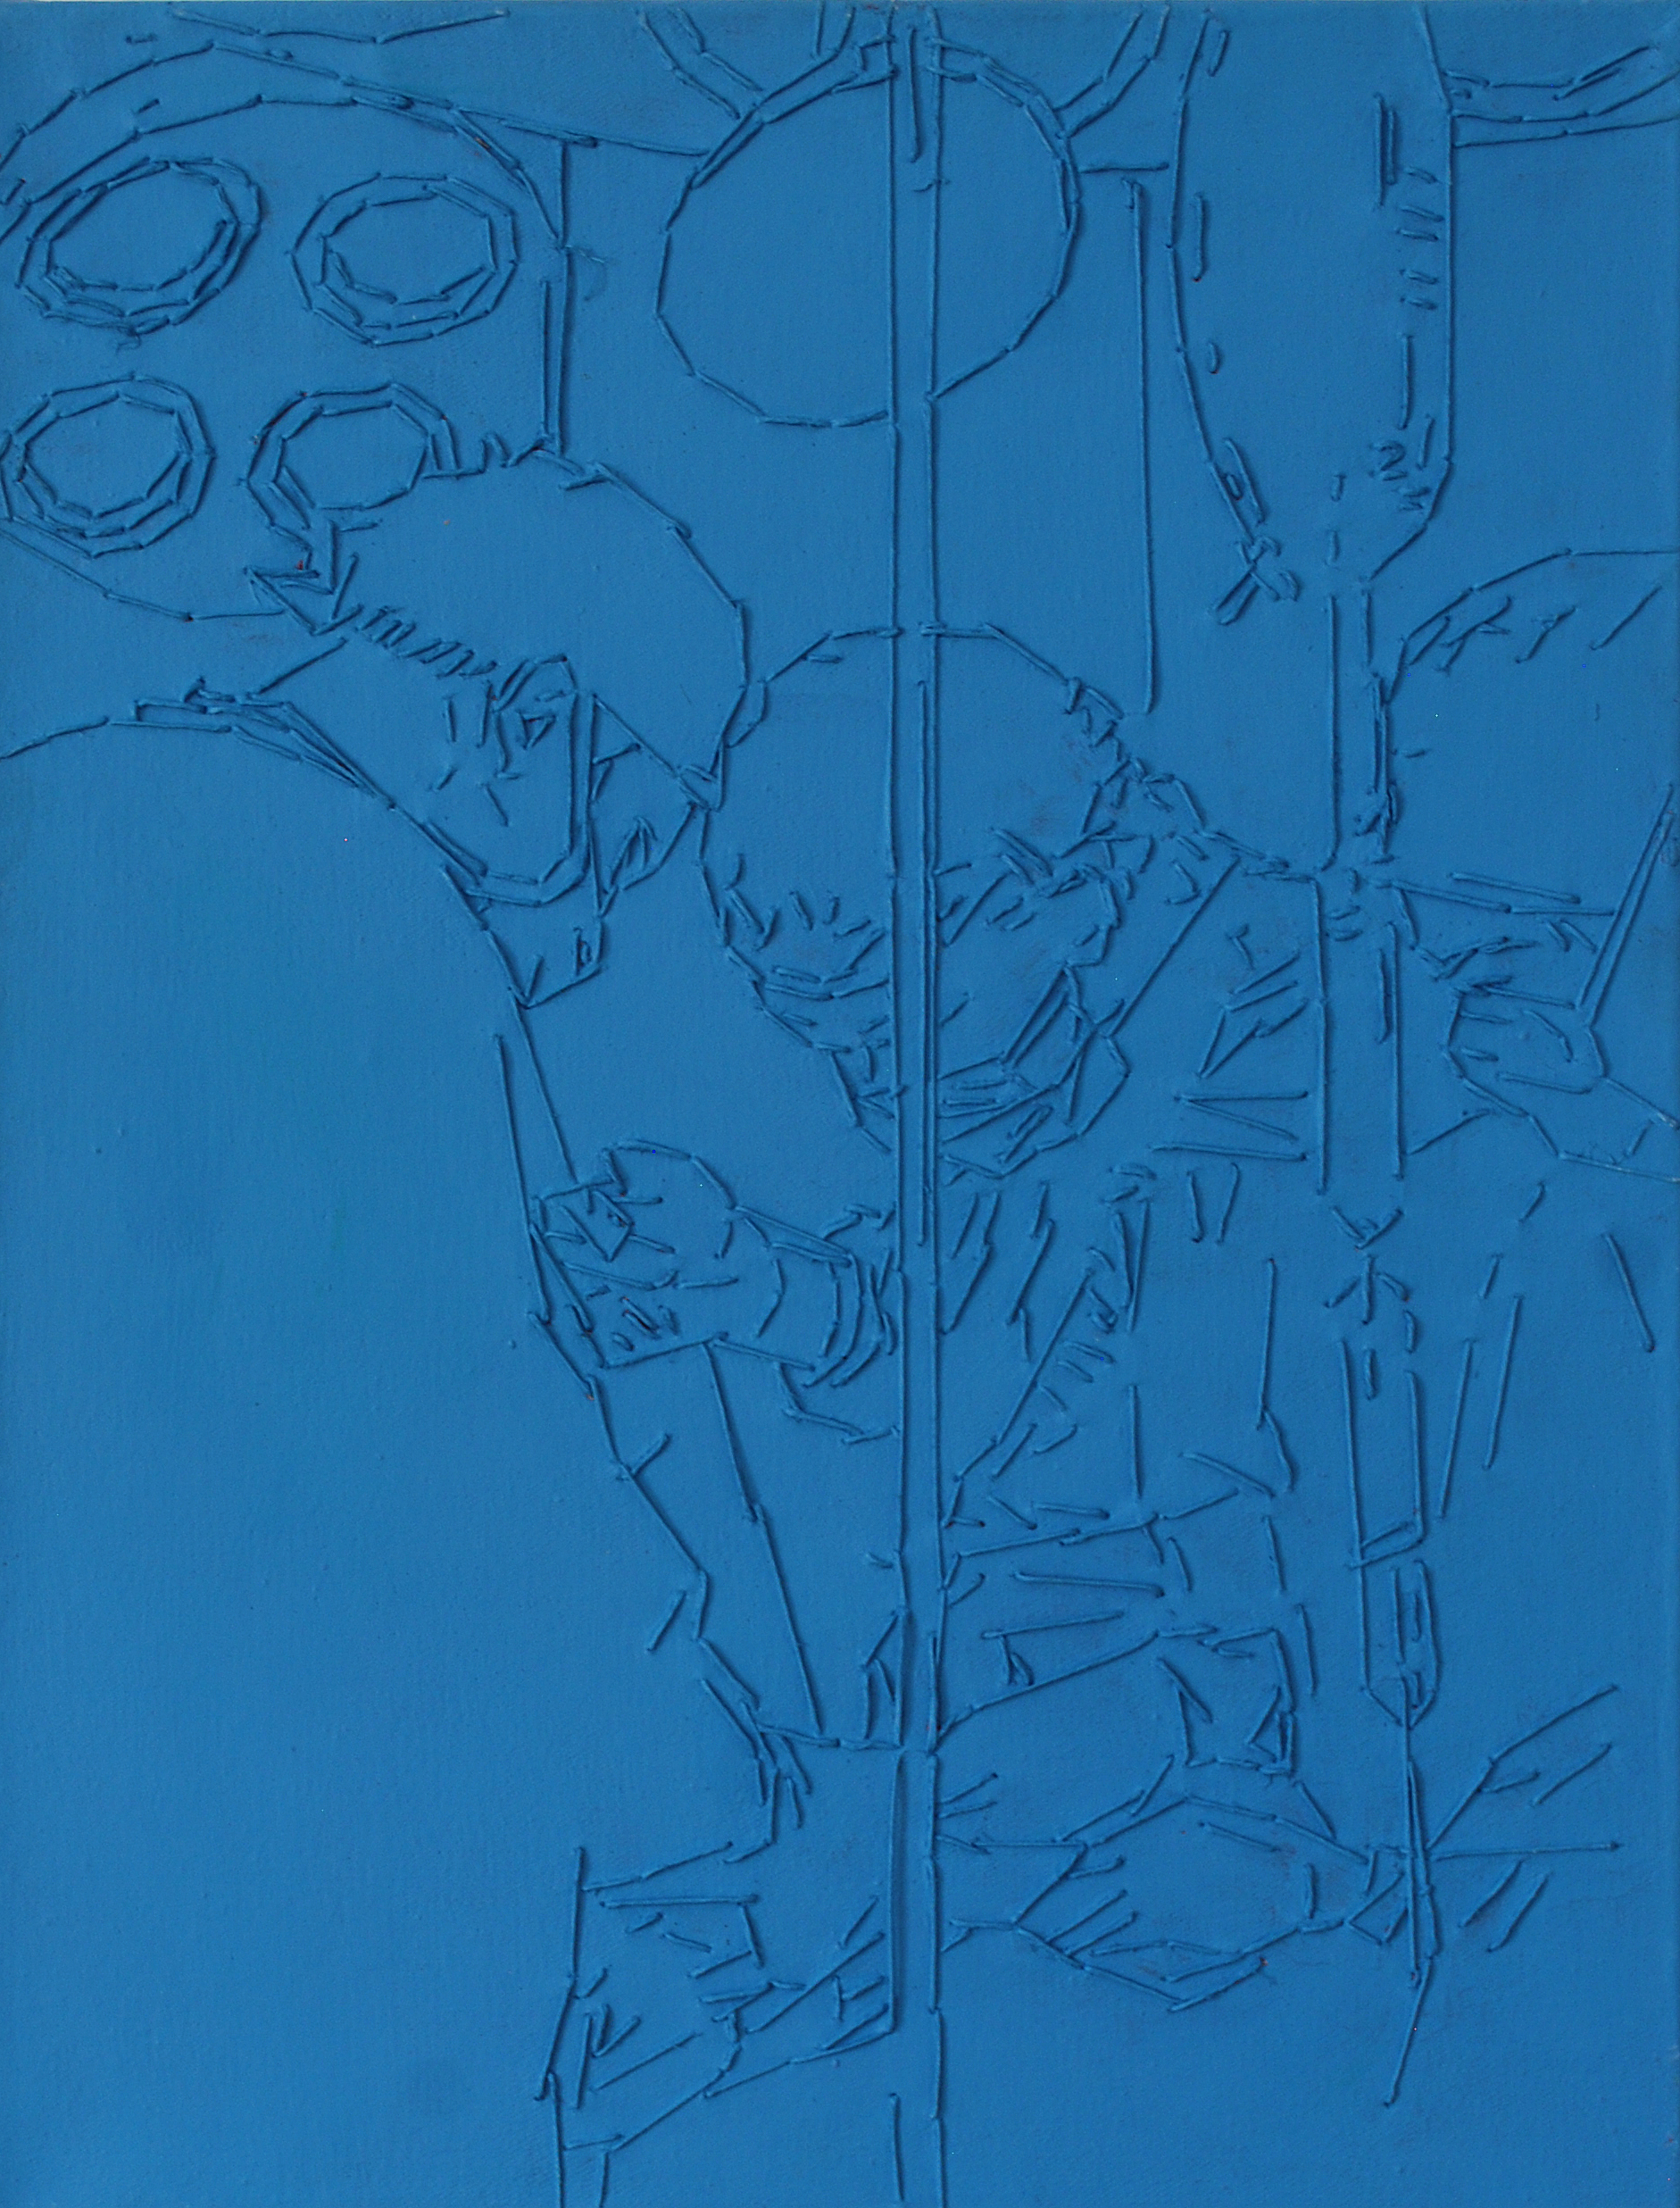 Grzegorz Sztwiertnia – Lekcje szycia – tempera, dratwa, olej, płótno, 35 x 46 cm, 2002